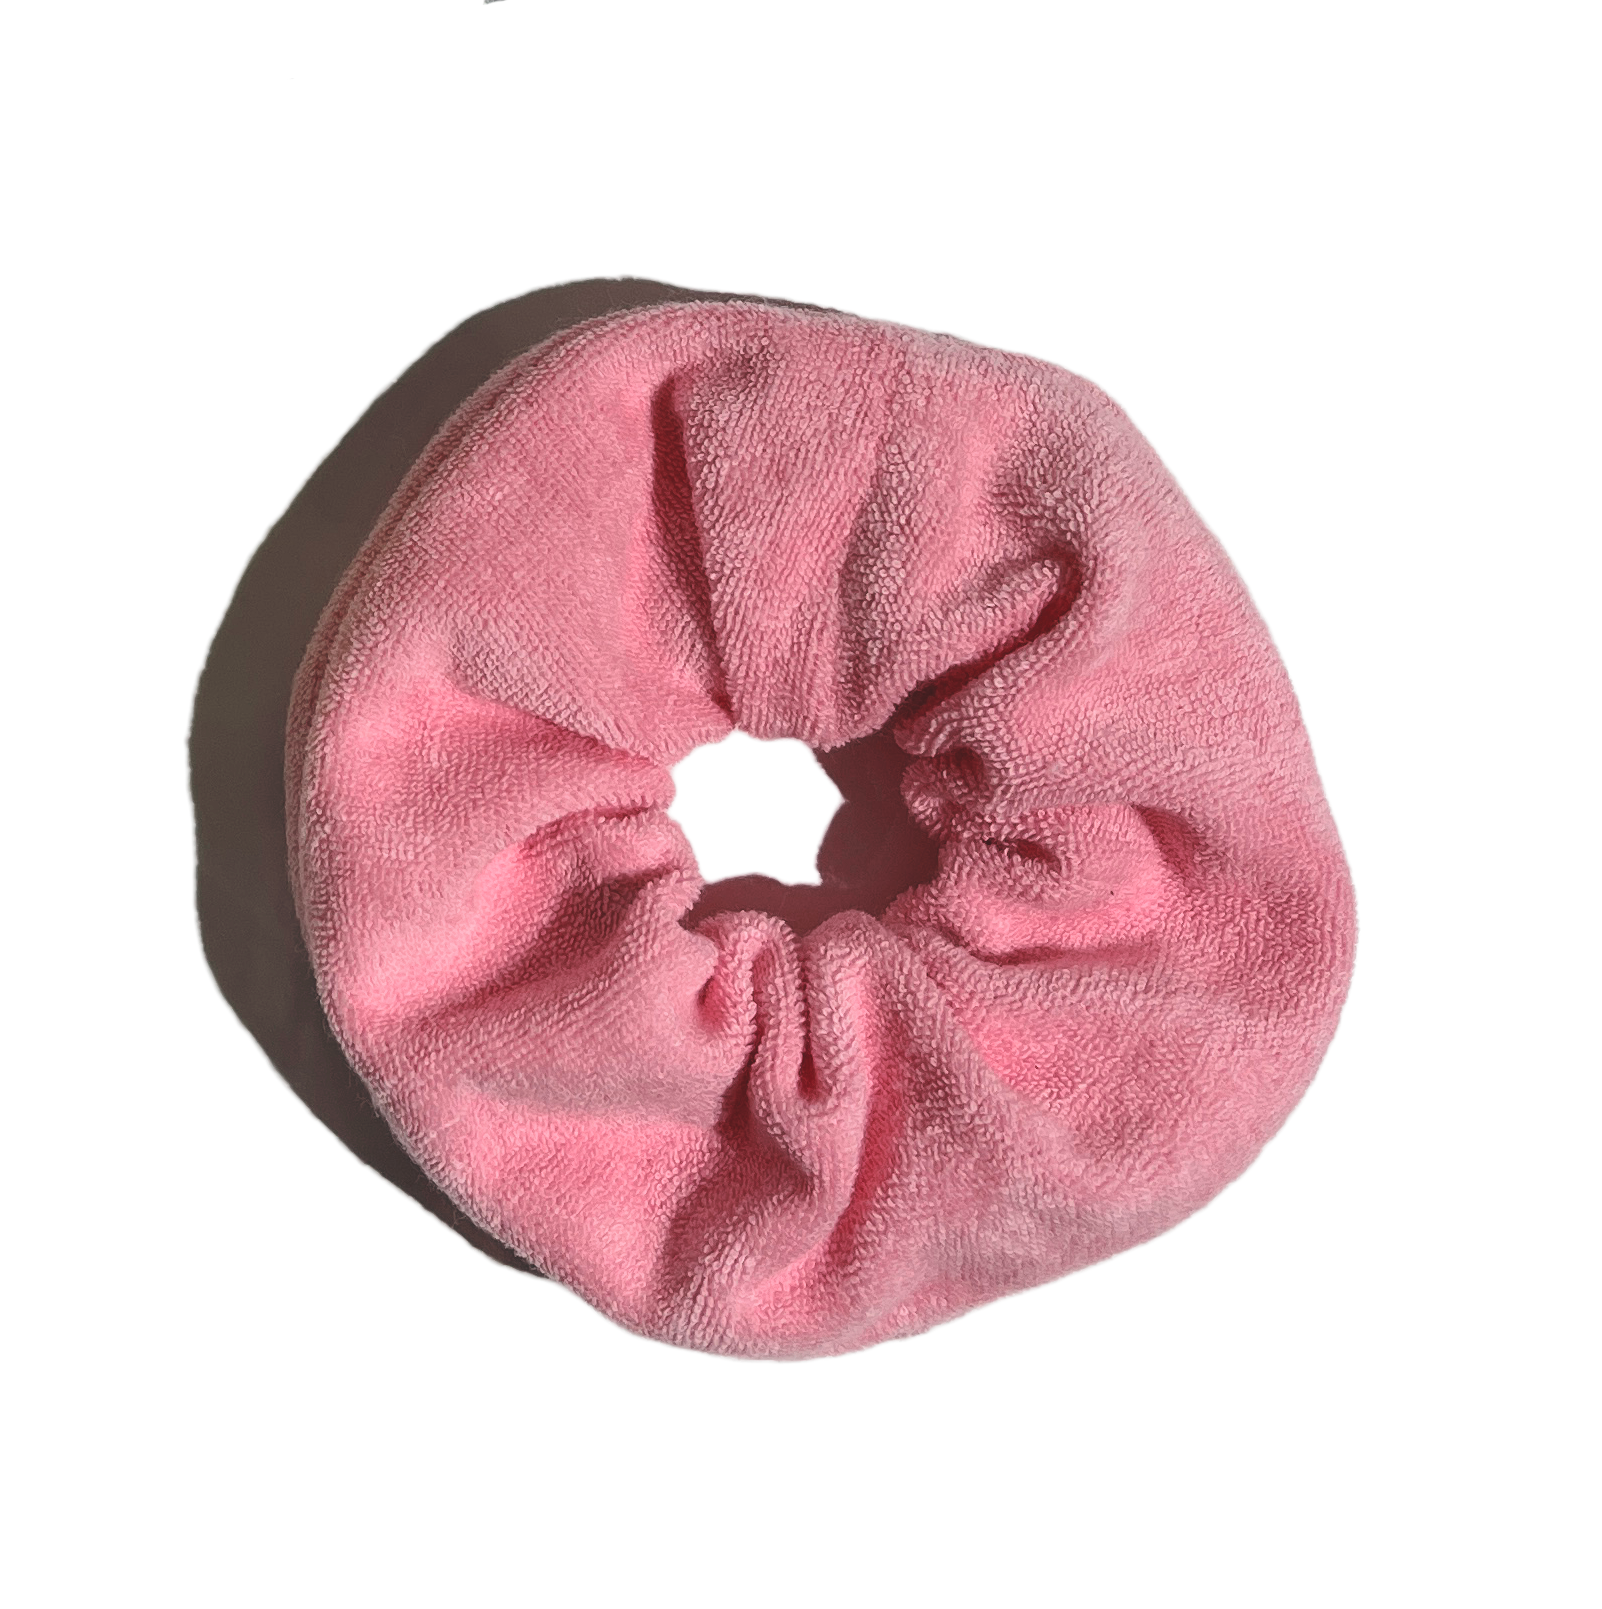 Pink scrunchie